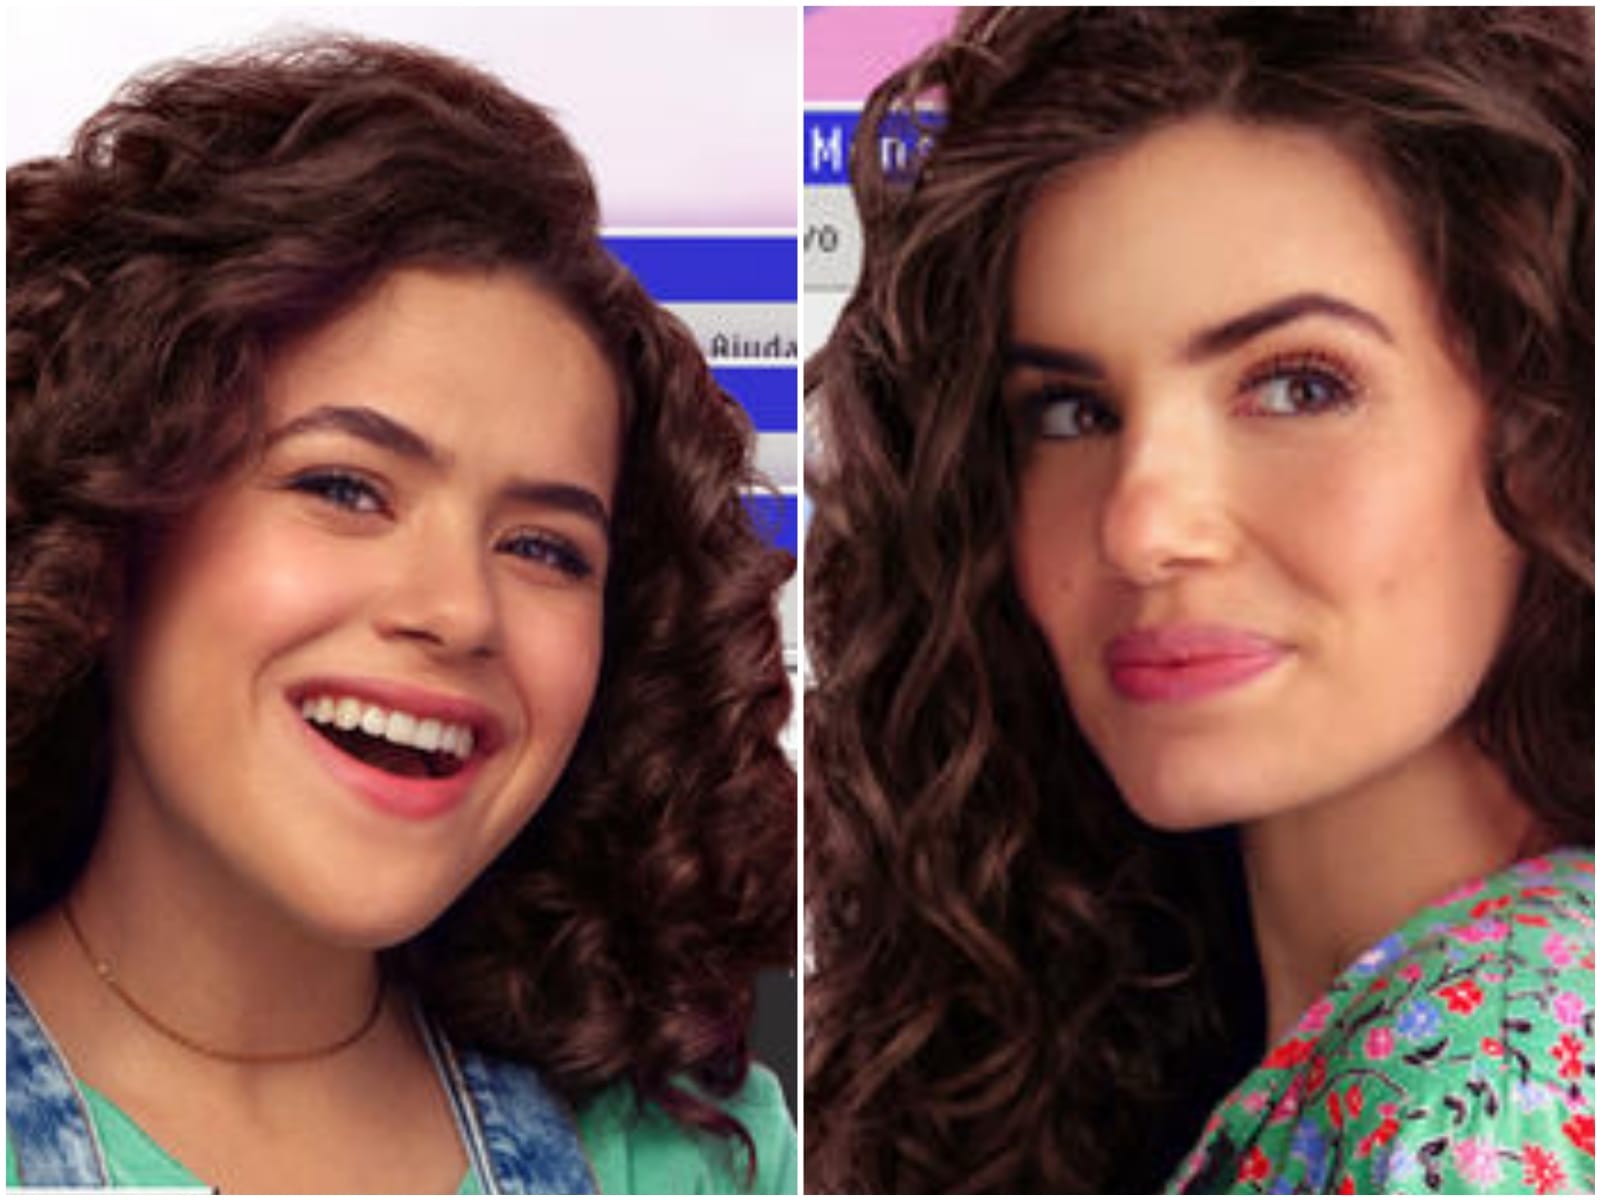 Maisa e Camila Queiroz estrelam a série De volta aos 15, que será lançada em fevereiro no streaming (Foto: Reprodução)